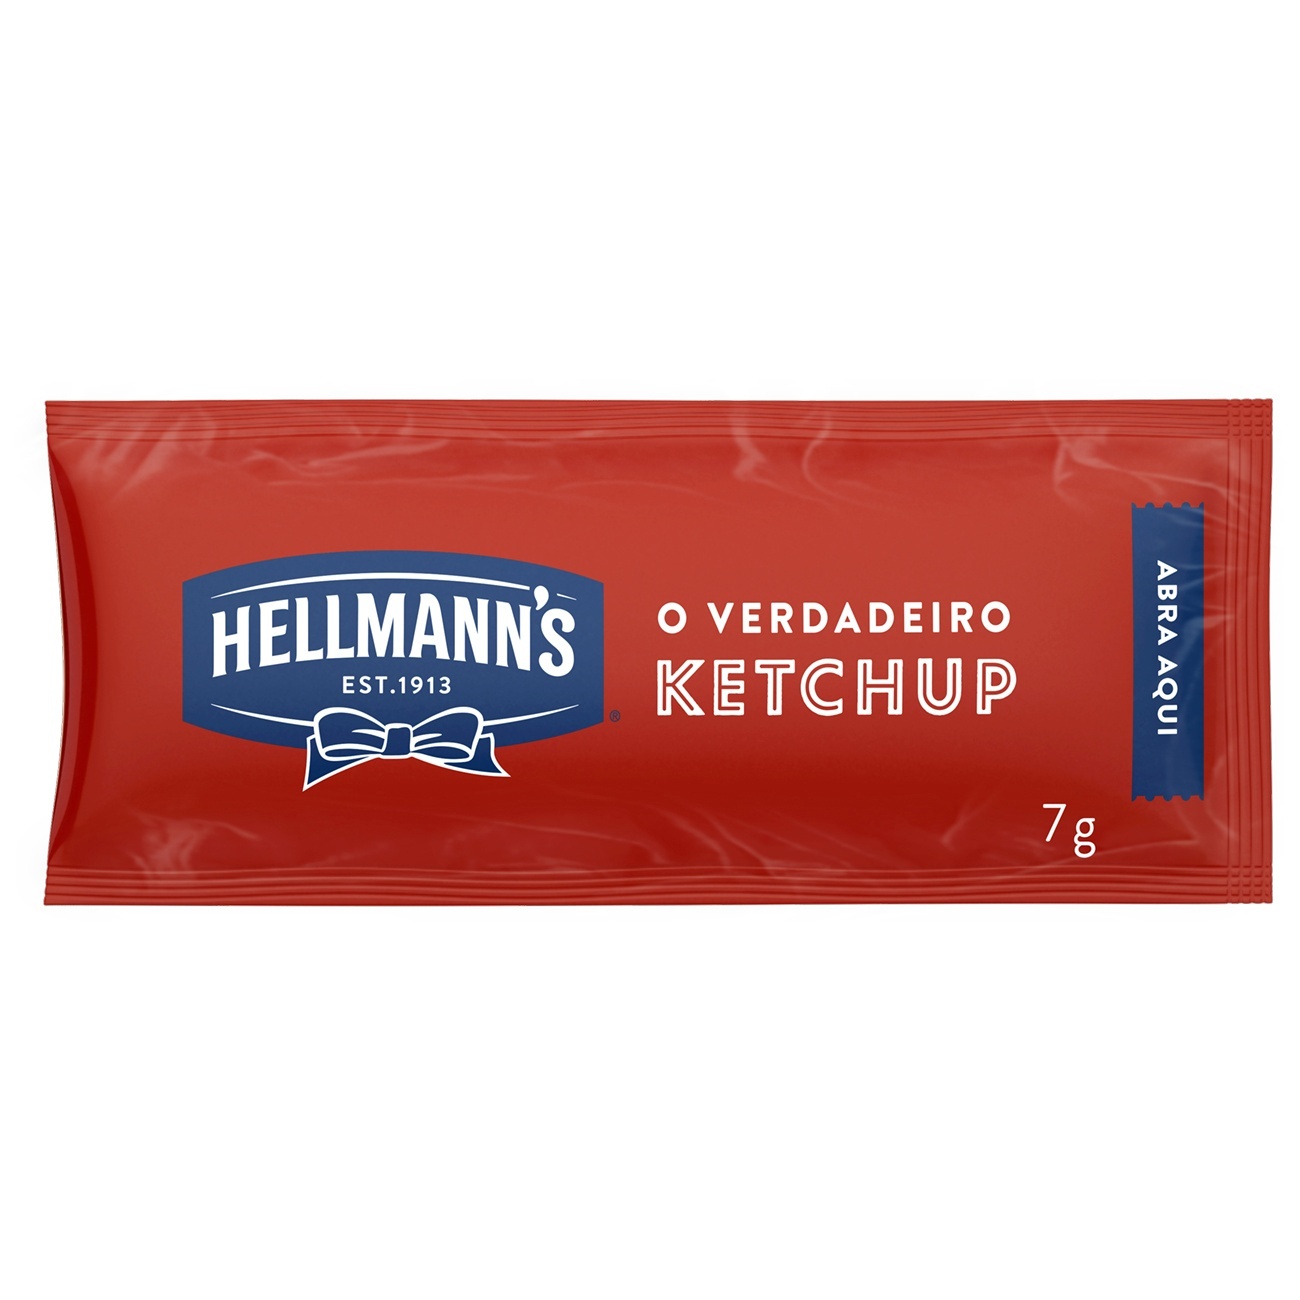 Ketchup Hellmann's Sach 7g | Com 168 unidades